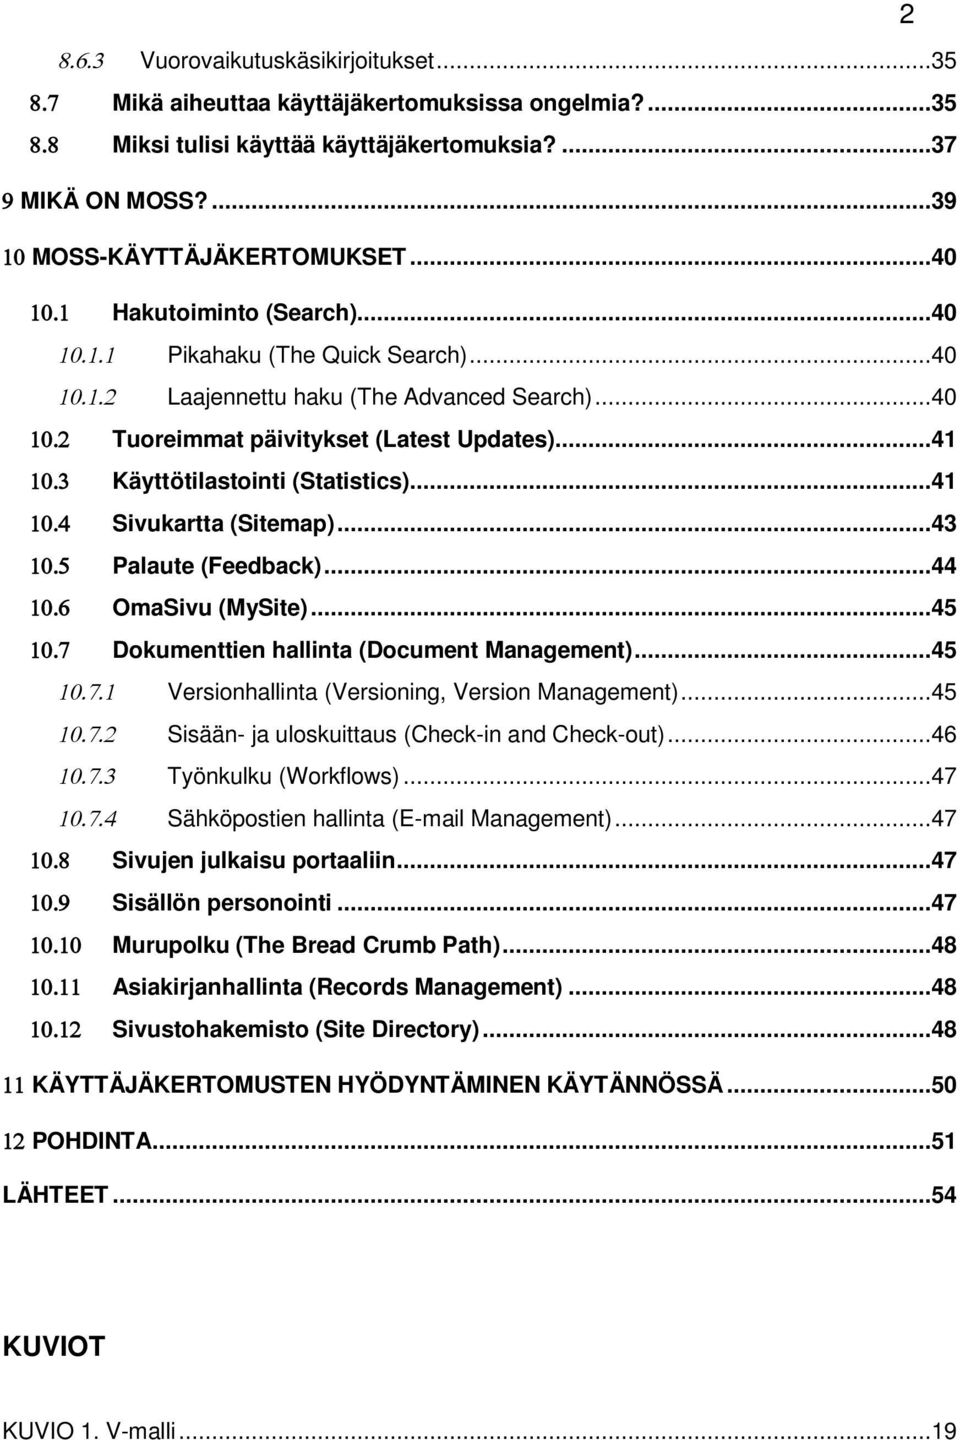 ..41 Sivukartta (Sitemap)...43 Palaute (Feedback)...44 OmaSivu (MySite)...45 Dokumenttien hallinta (Document Management)...45 Versionhallinta (Versioning, Version Management).